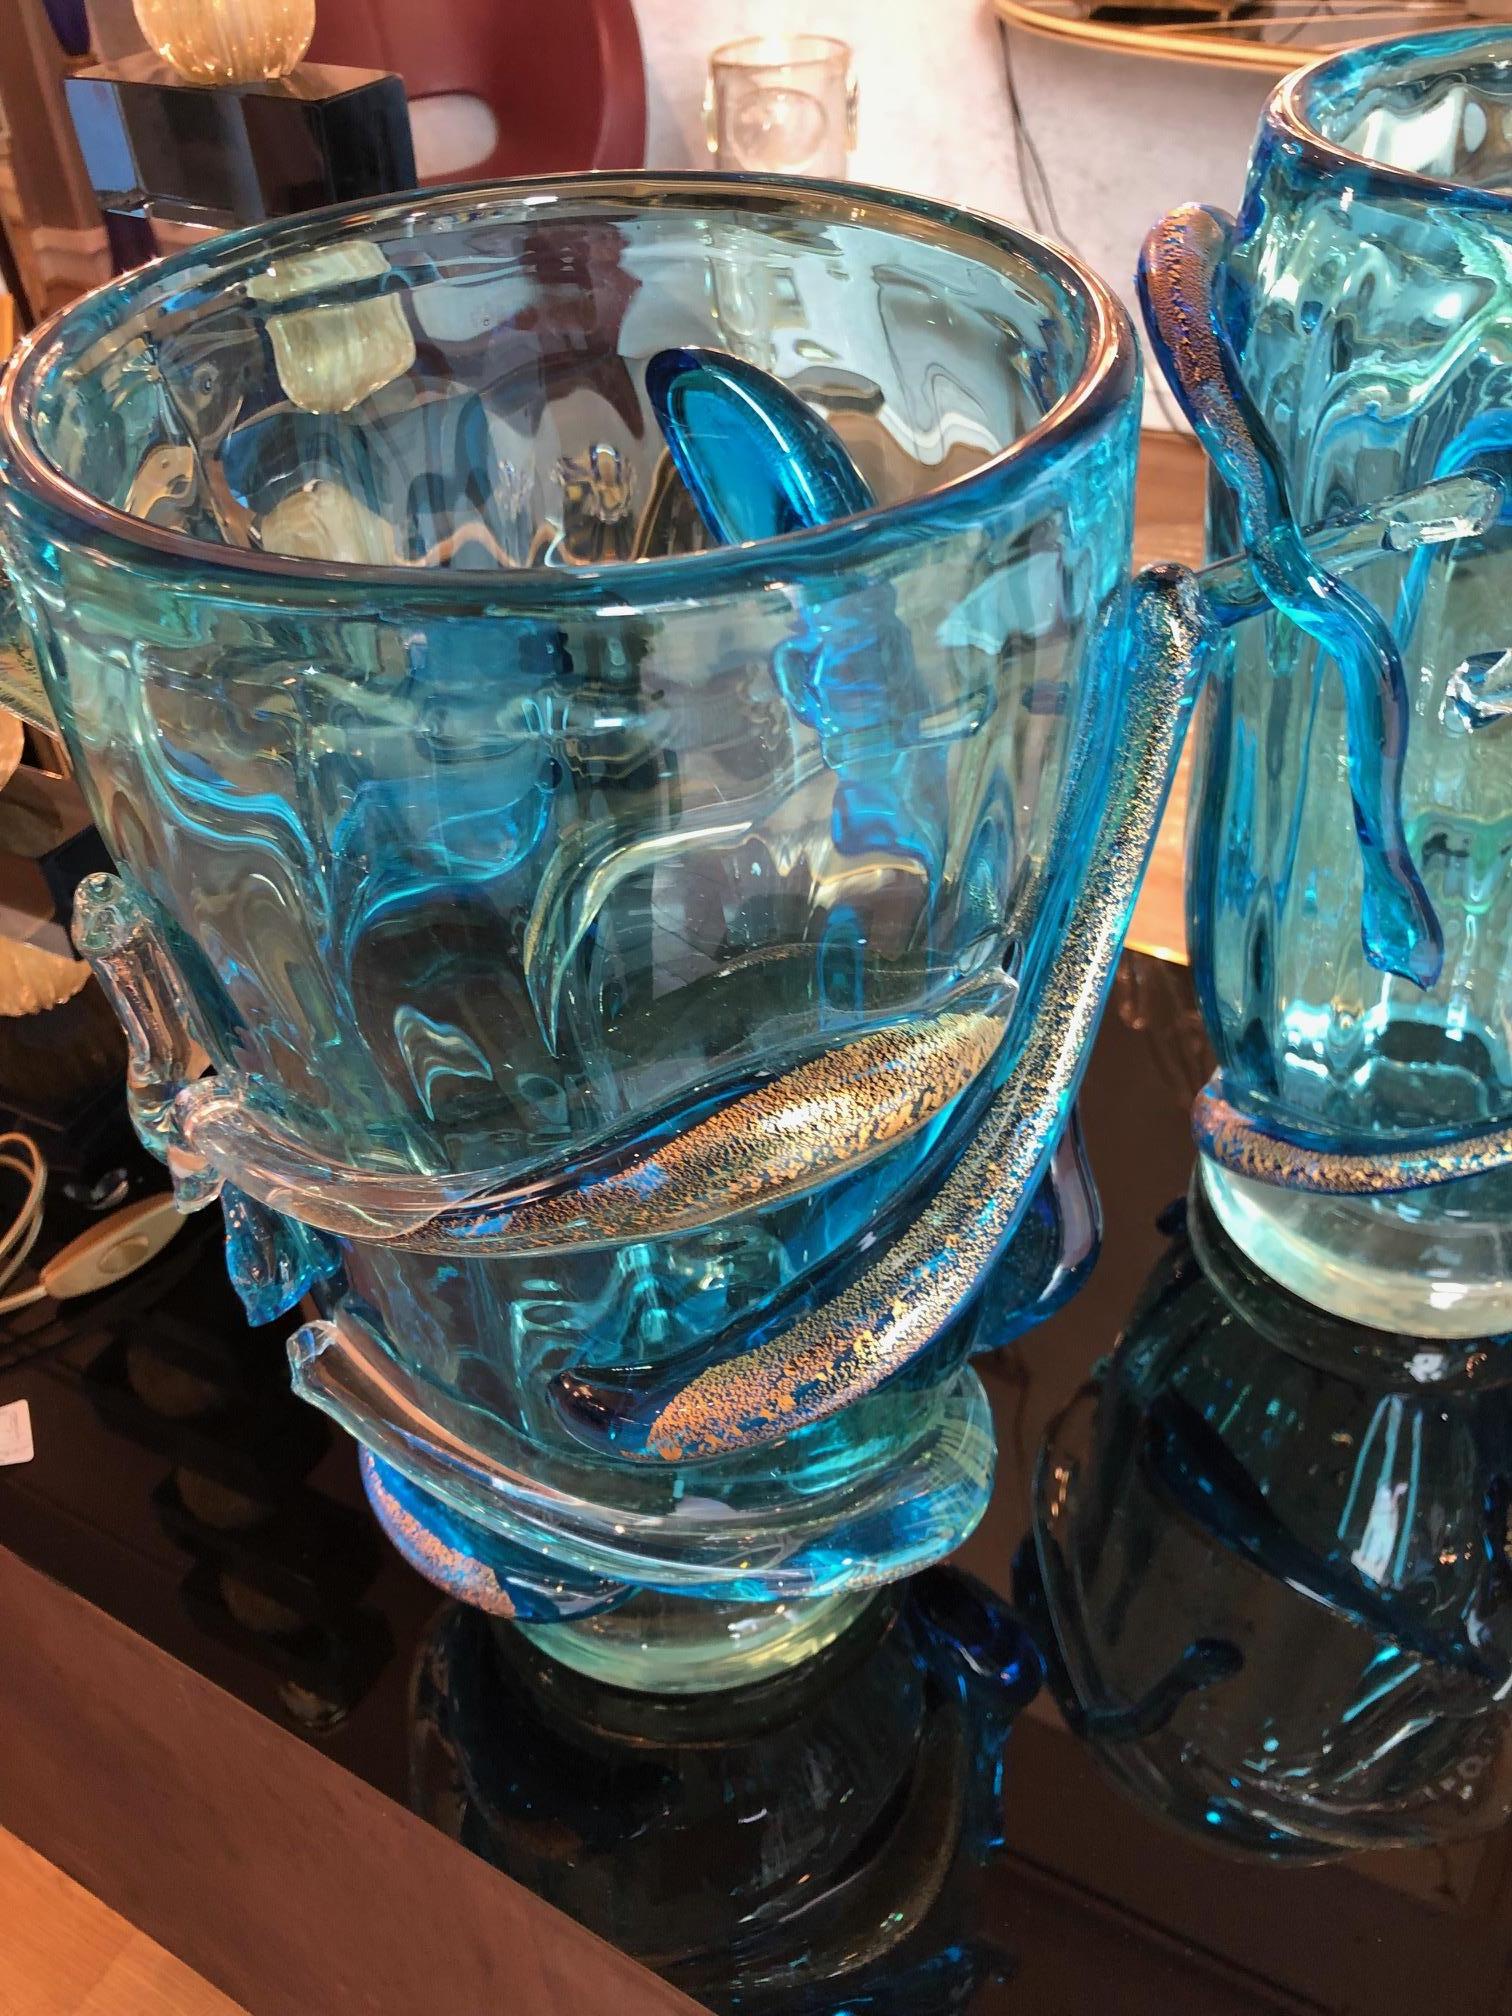 Italian Pair of Vases in Murano Glass Signed “Costantini Murano”